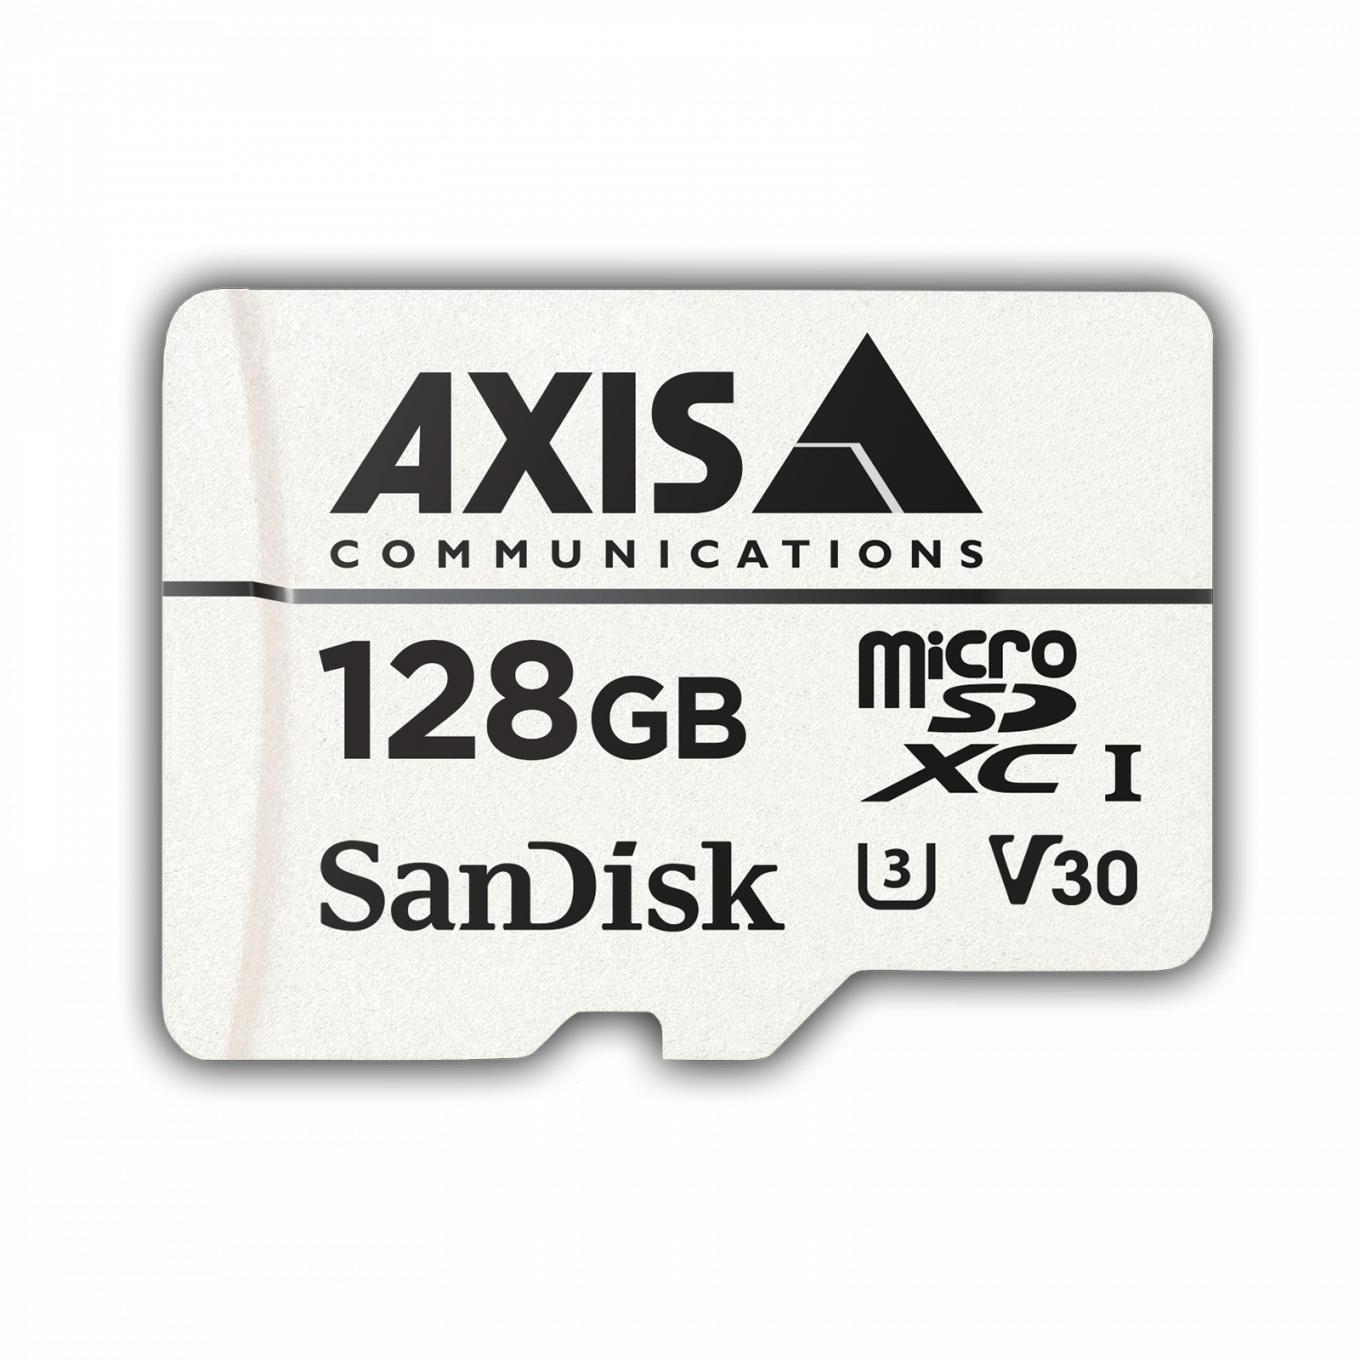 Karta pamięci masowej AXIS typu zasób lokalny do dozoru 128 GB z przodu